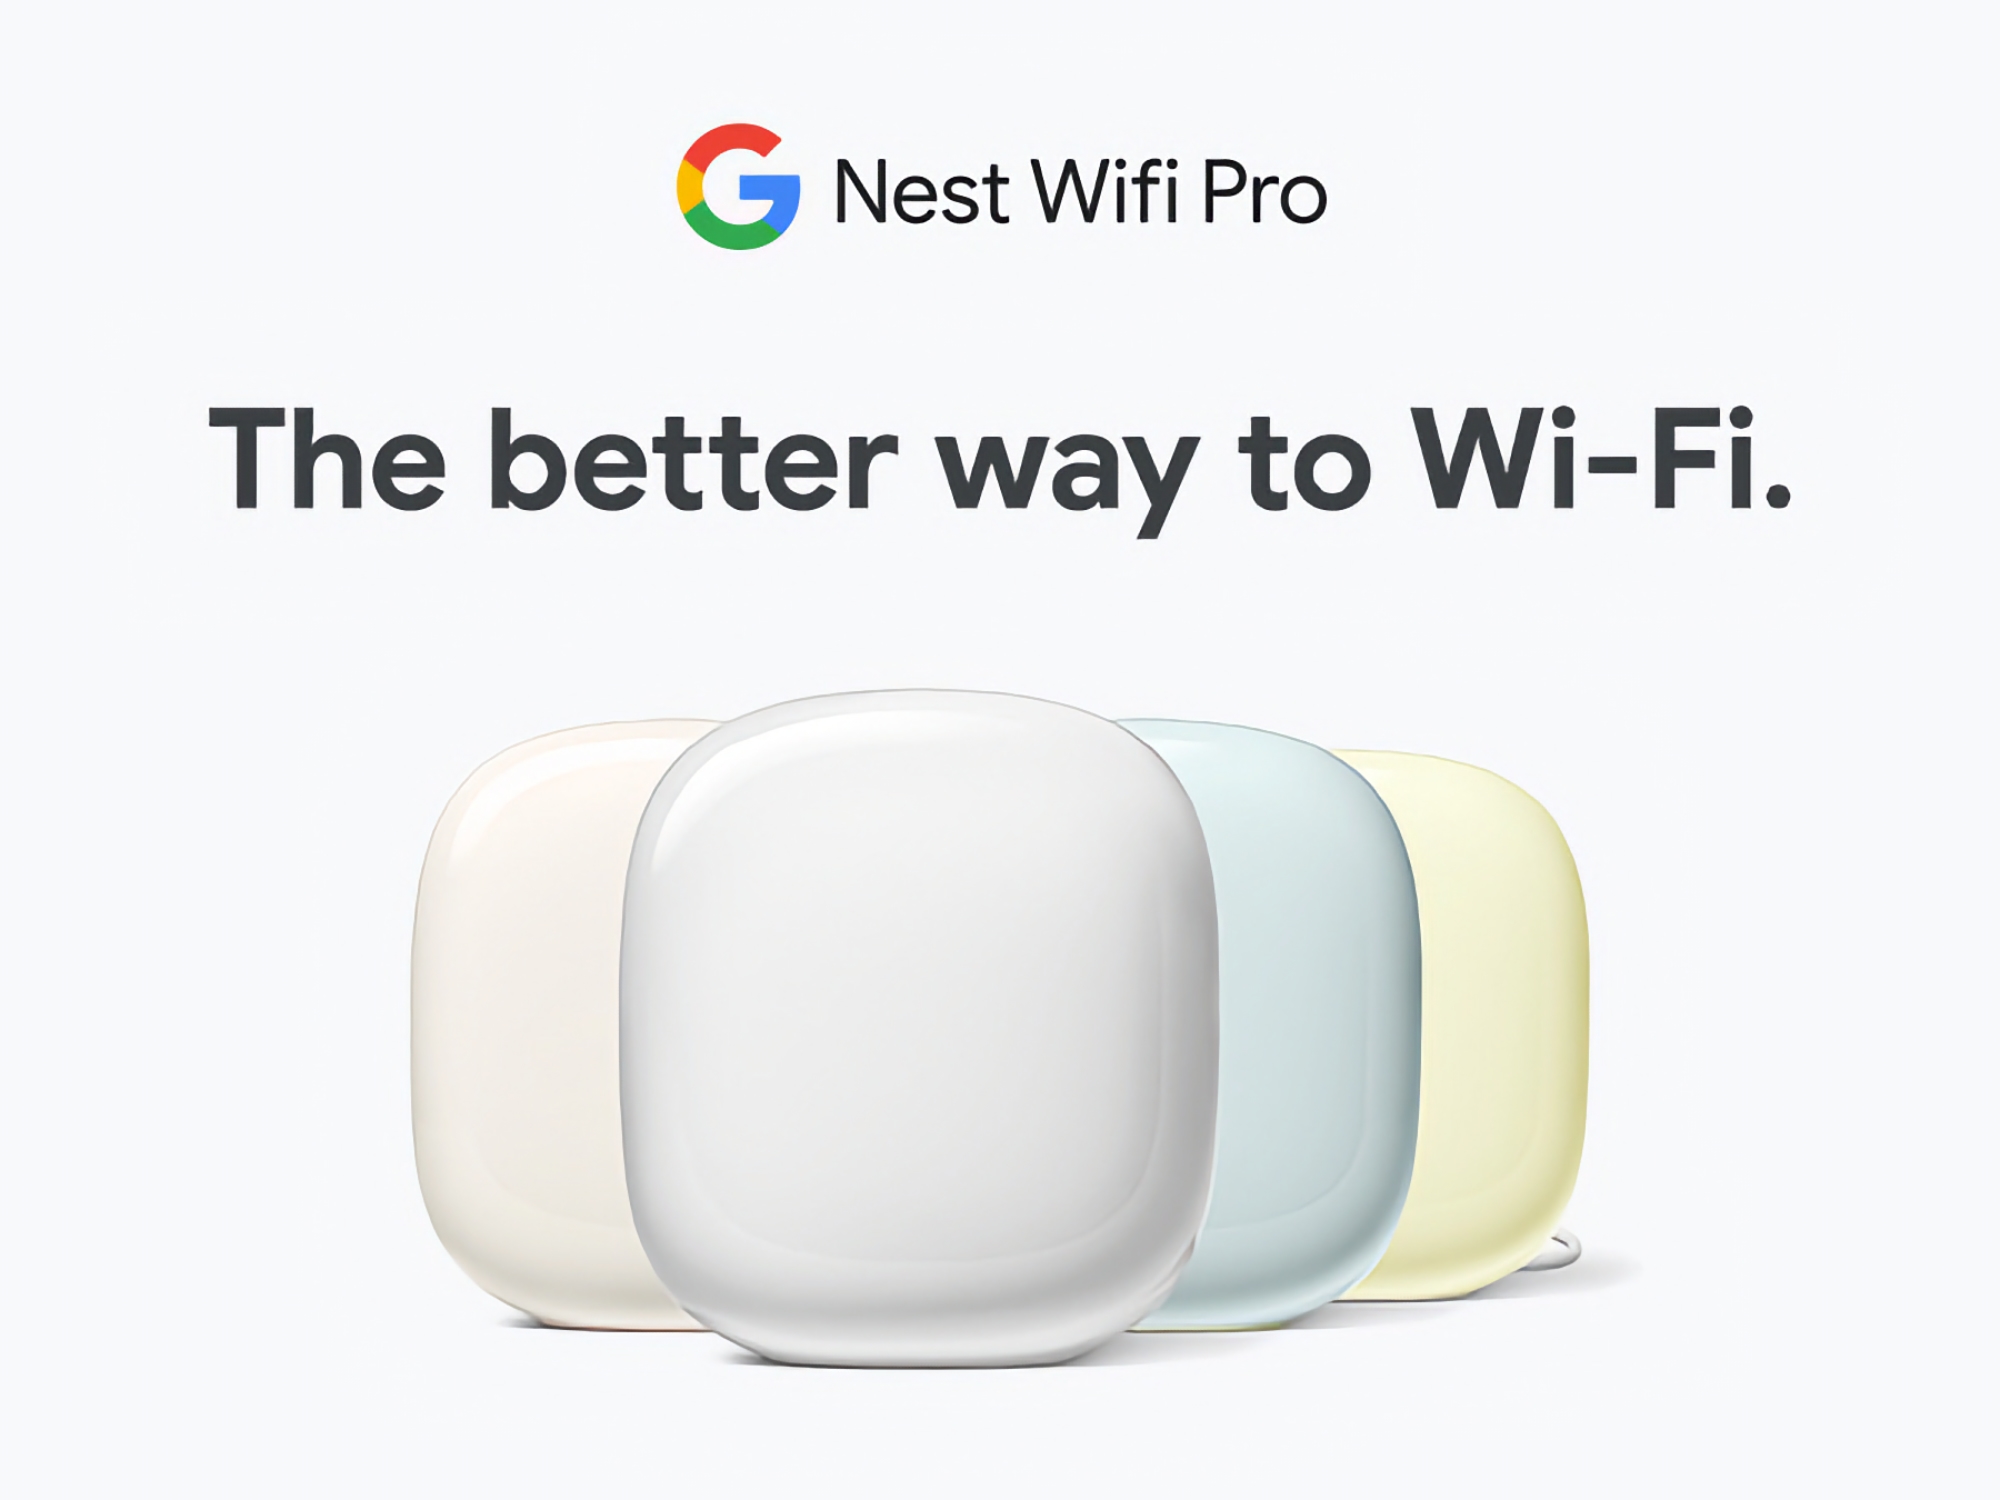 Google Nest WiFi Pro hjemmeroutersystem med Wi-Fi 6E-understøttelse fås på Amazon med en rabat på op til $80